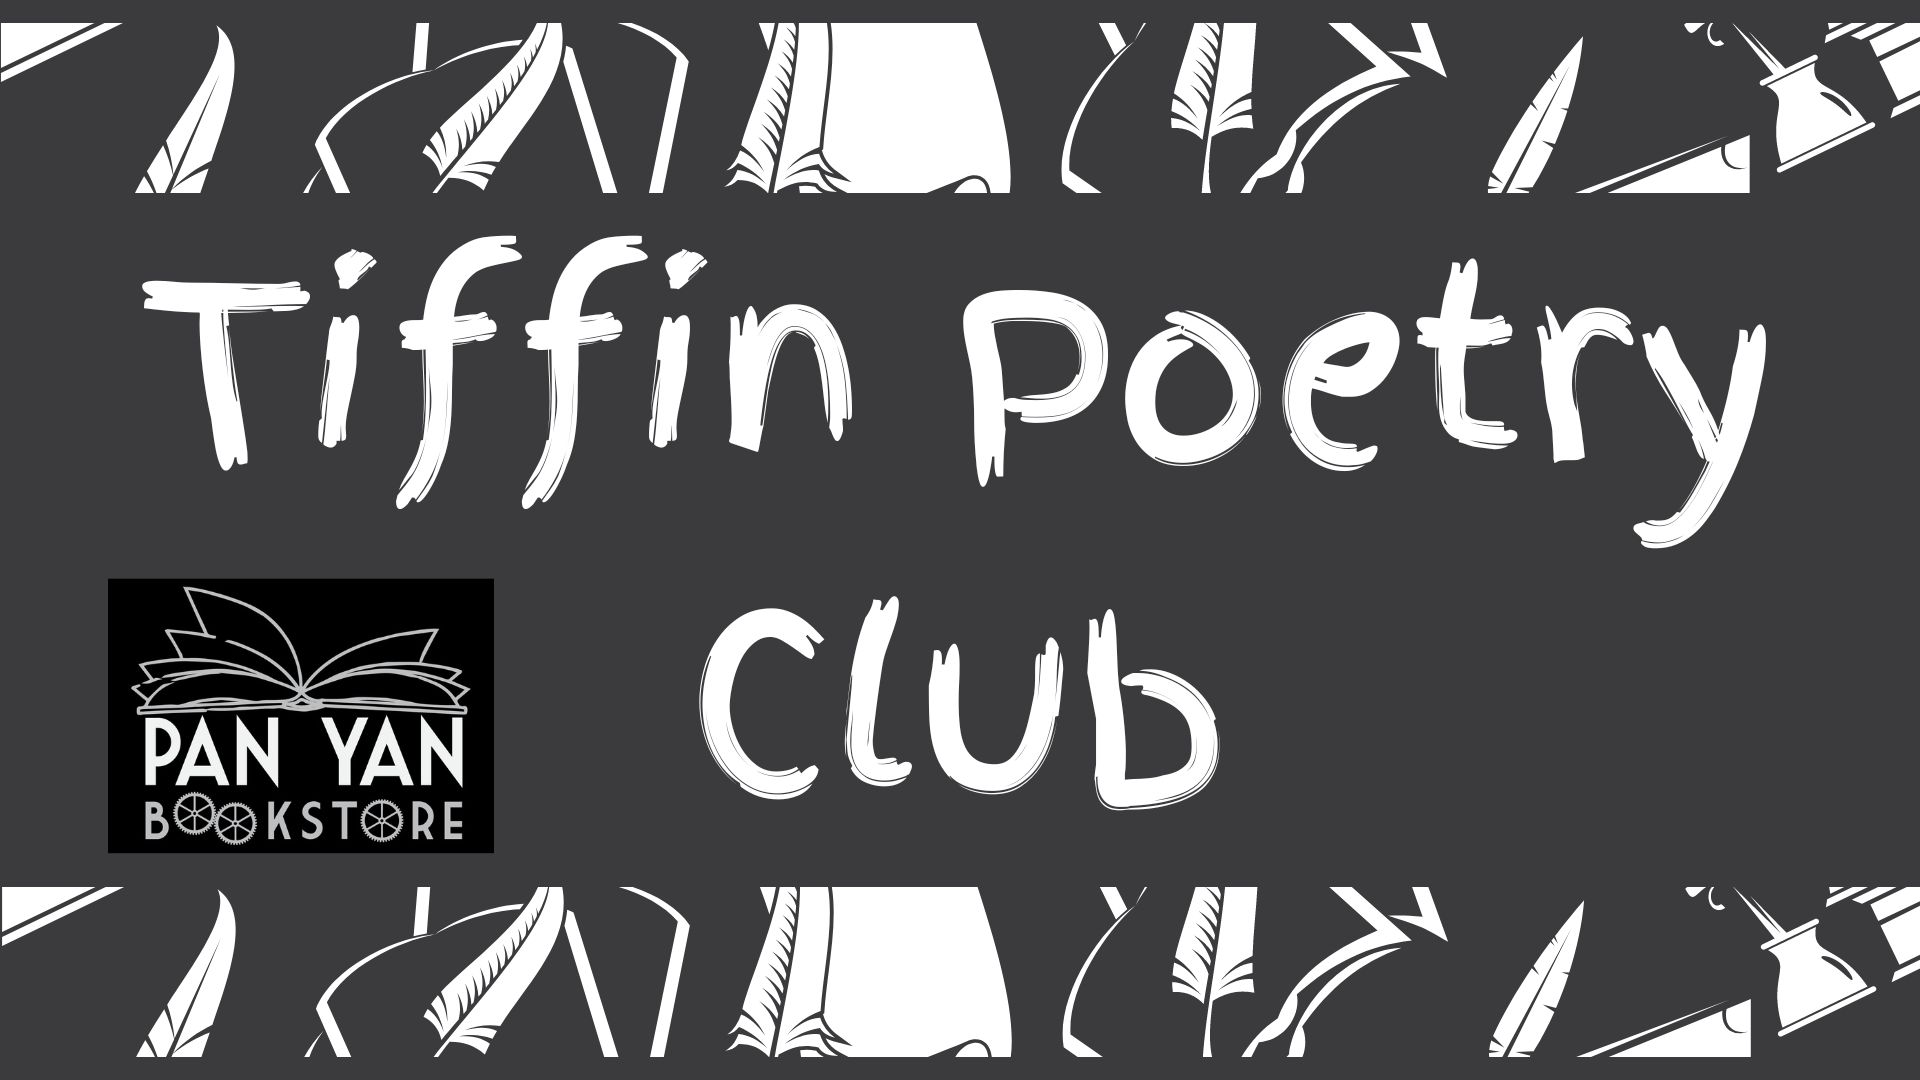 Tiffin Poetry Club Meeting